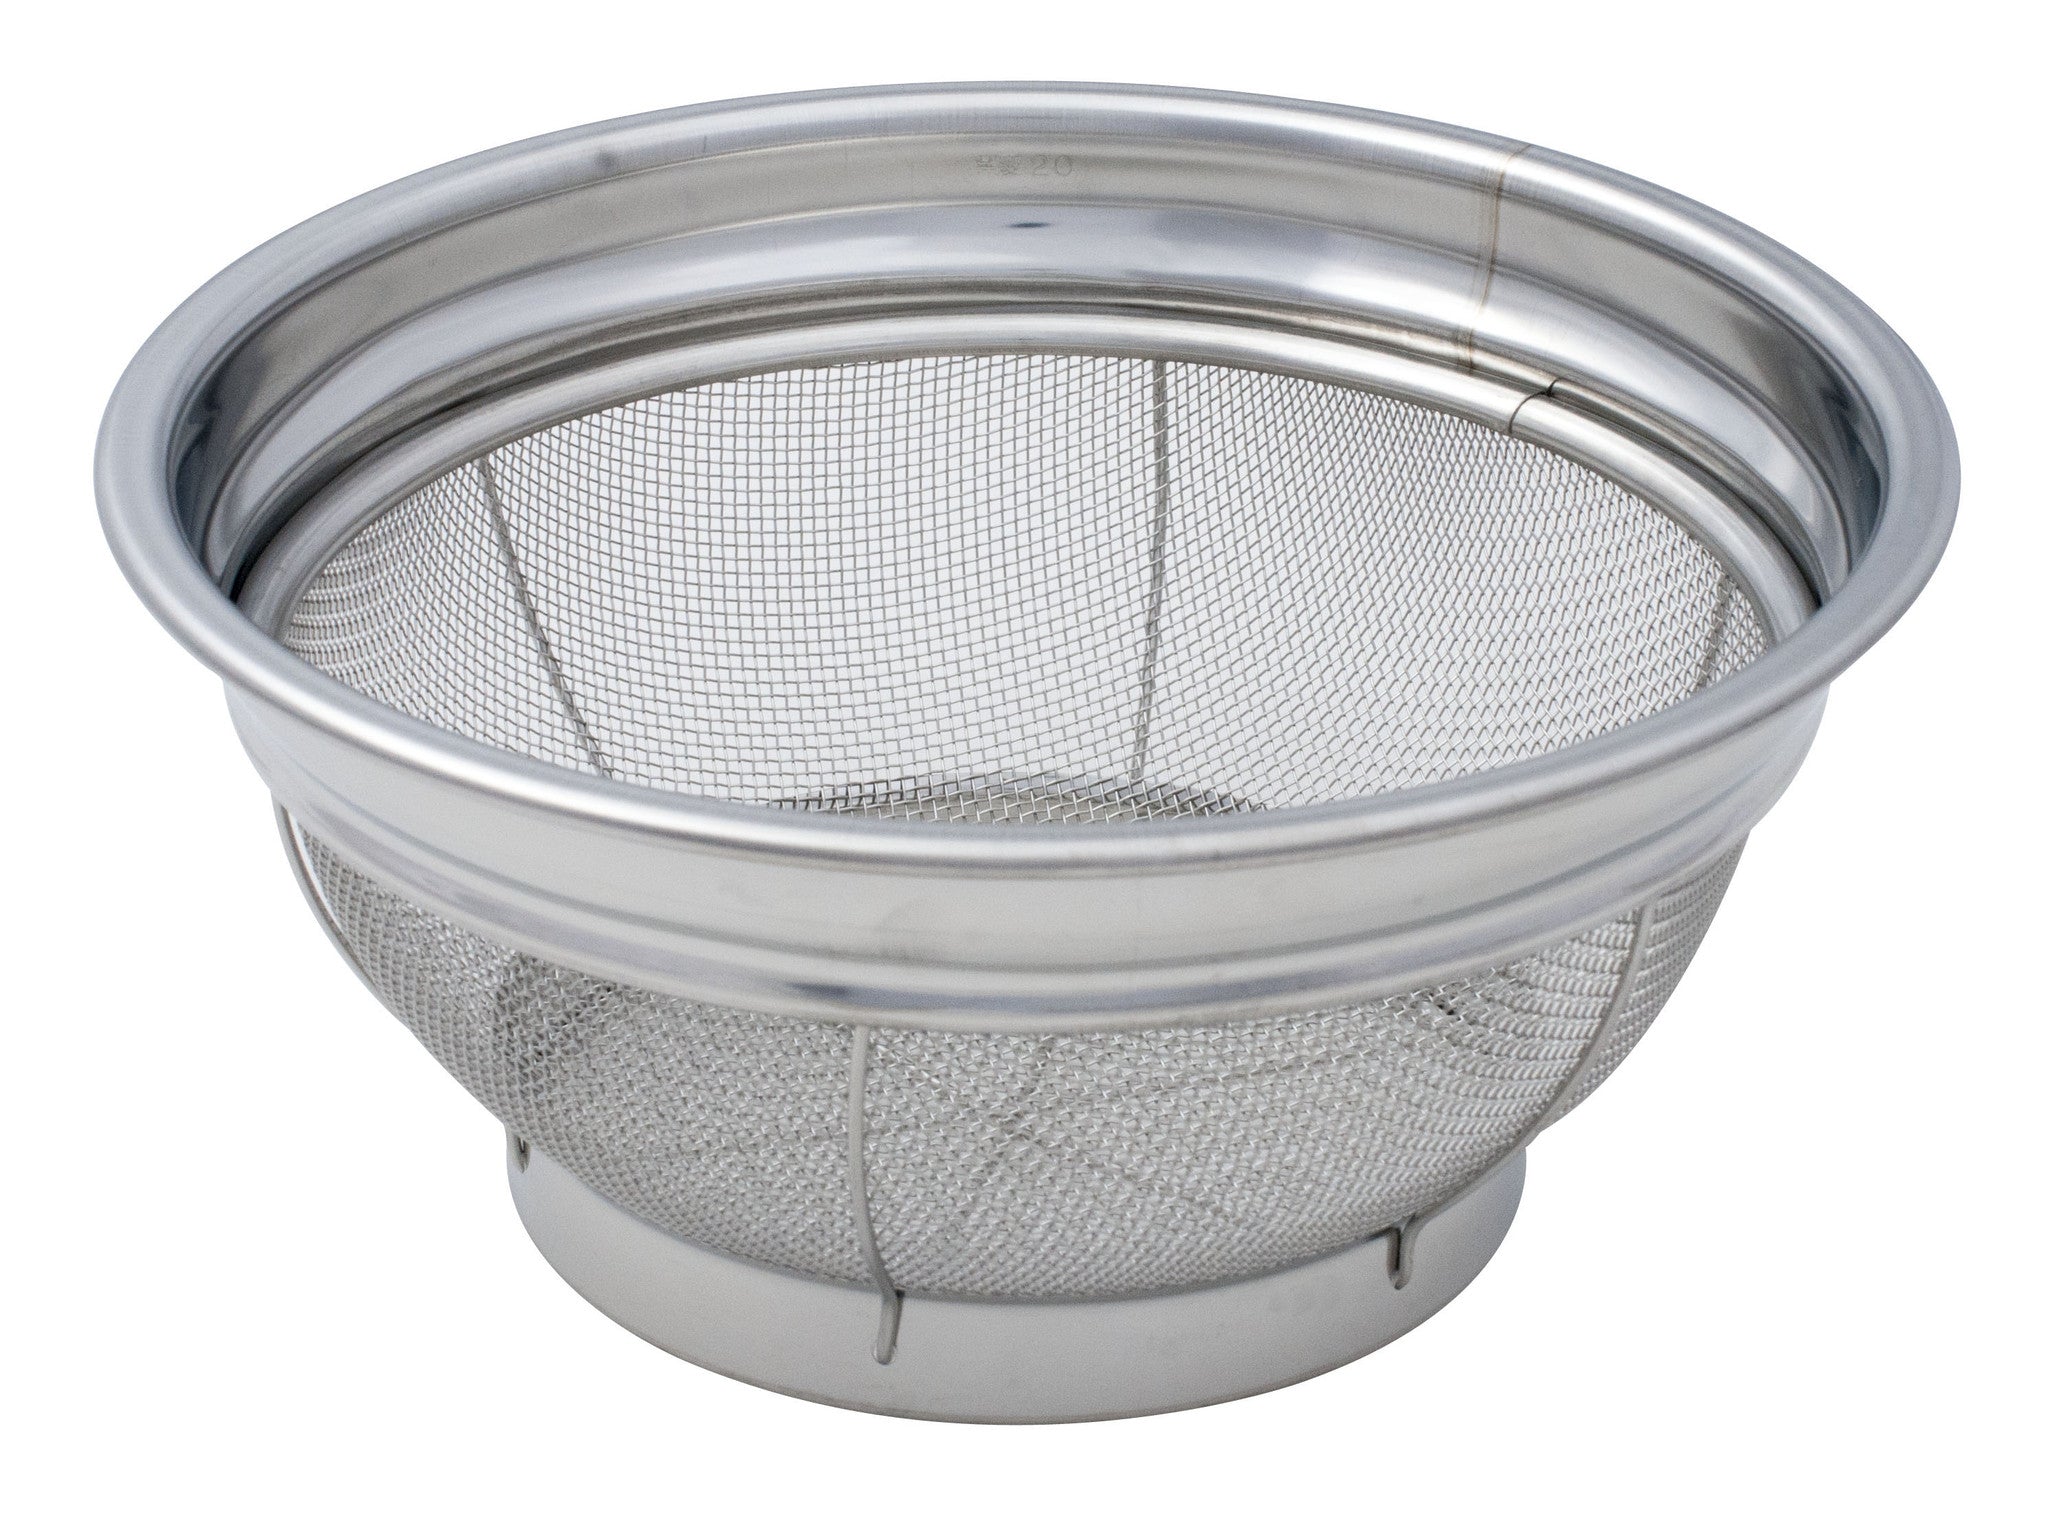 stainless steel kitchen sink basket strainer and strainer set